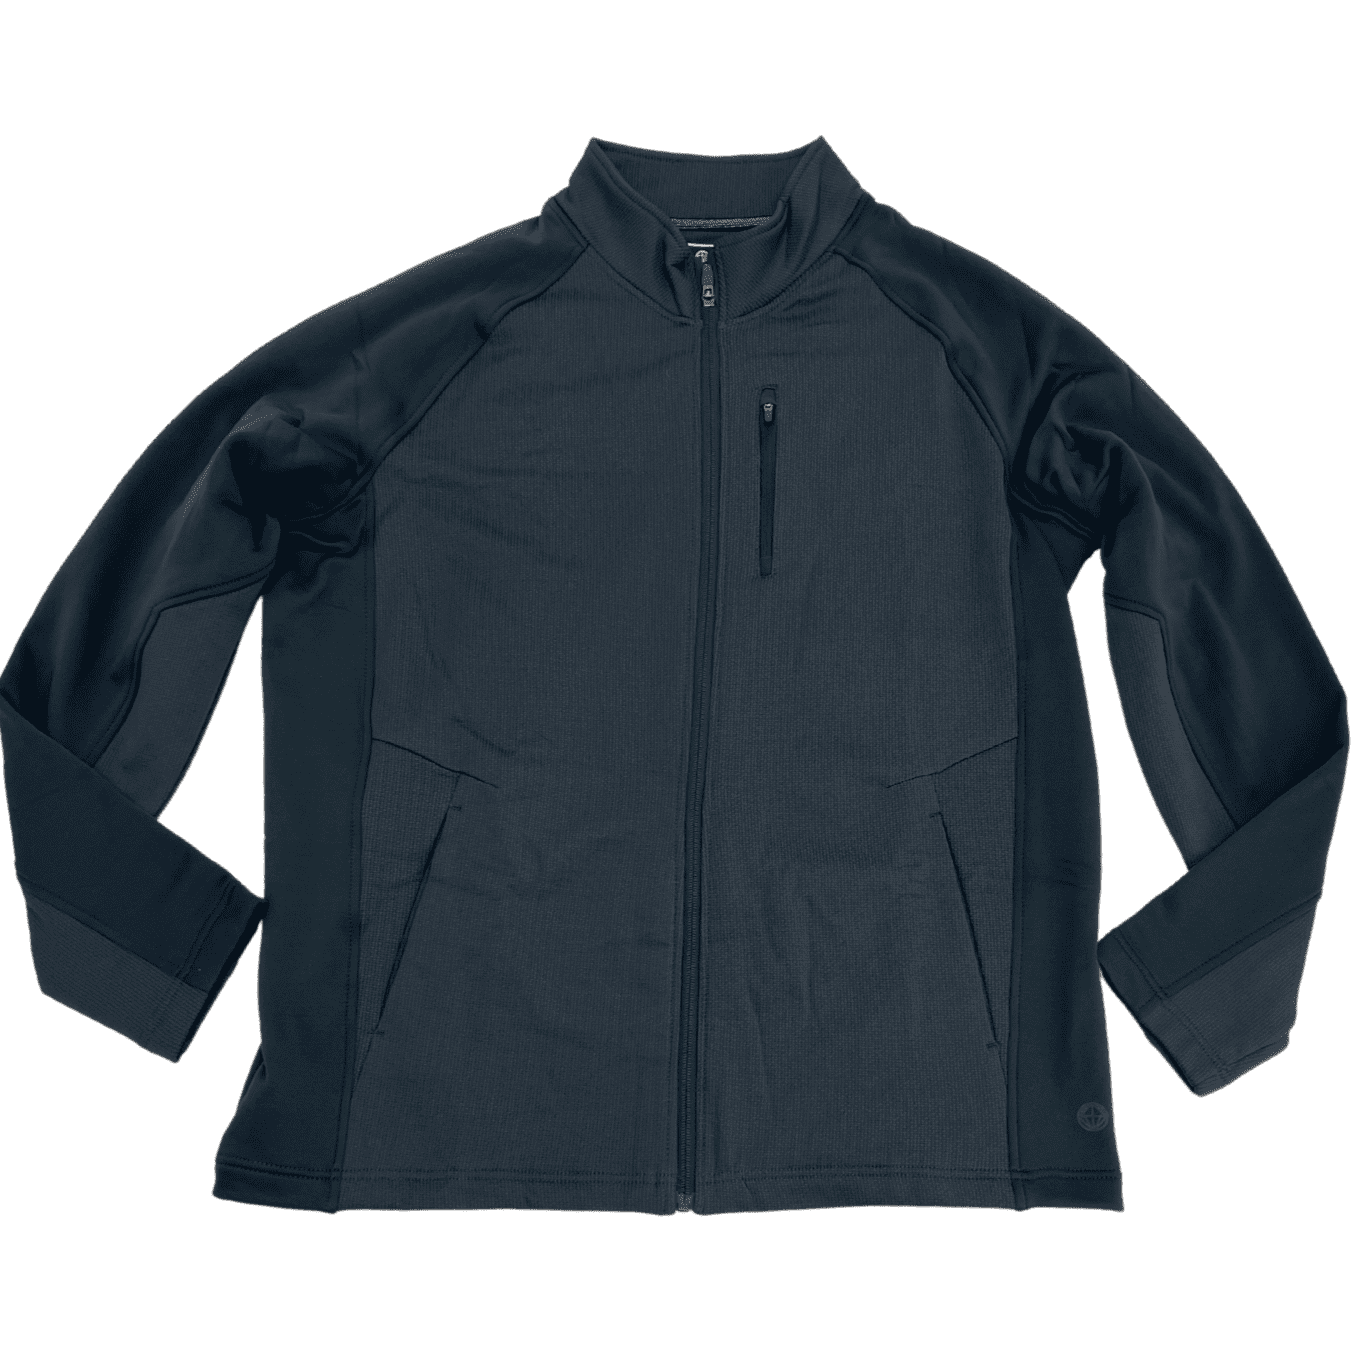 Mondetta Men's Trainer Jacket: Grey / Size XLarge